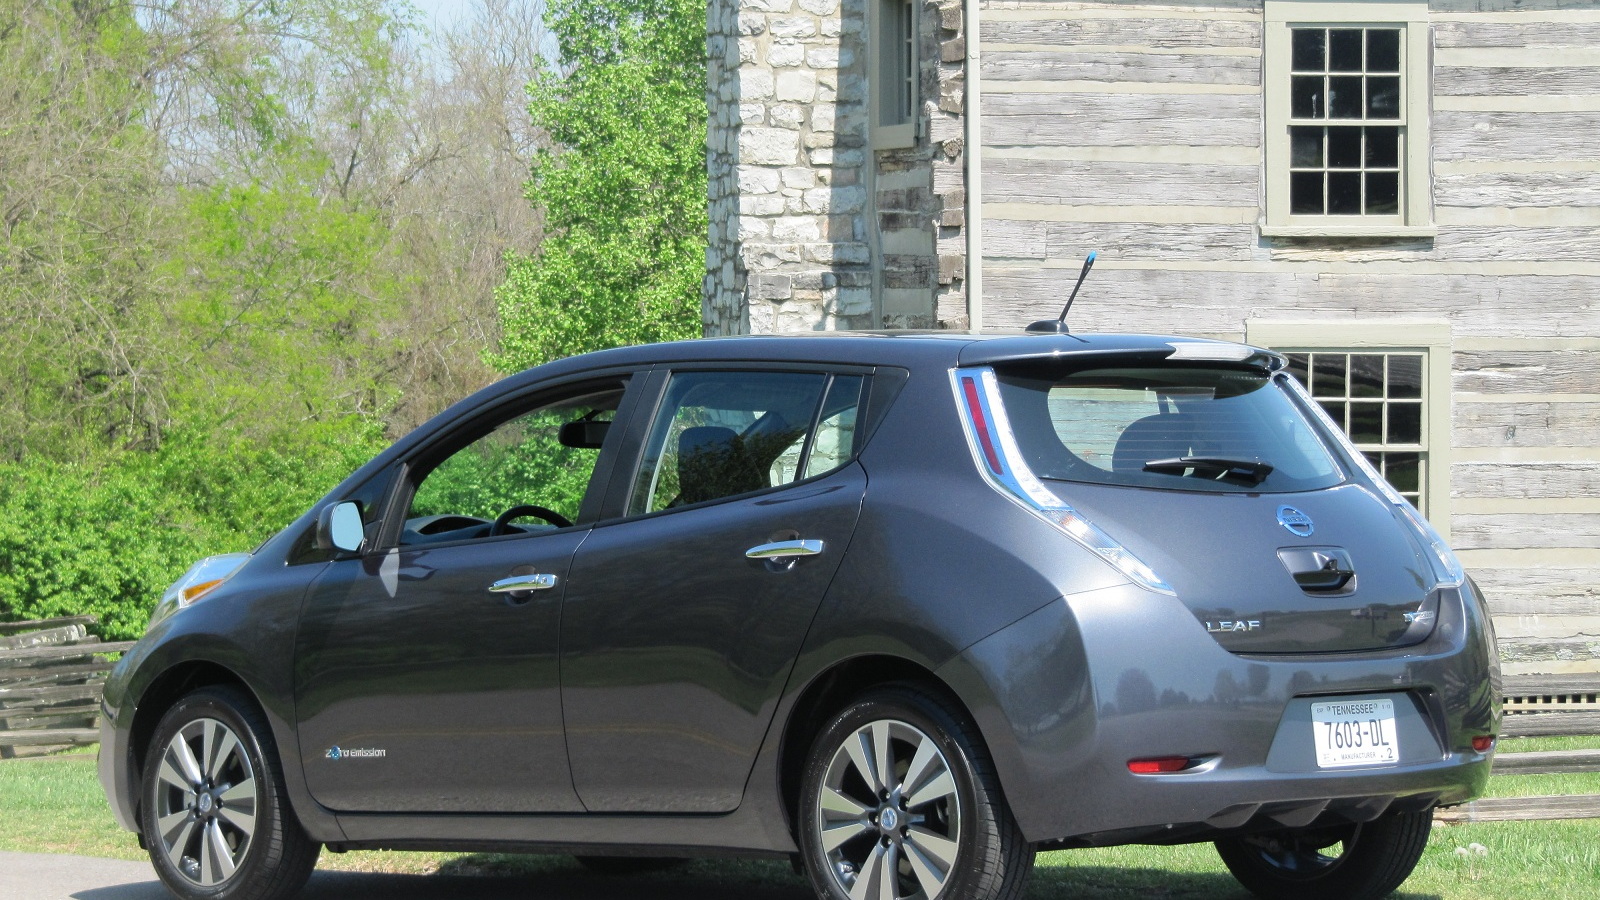 2013 Nissan Leaf, Nashville area test drive, April 2013